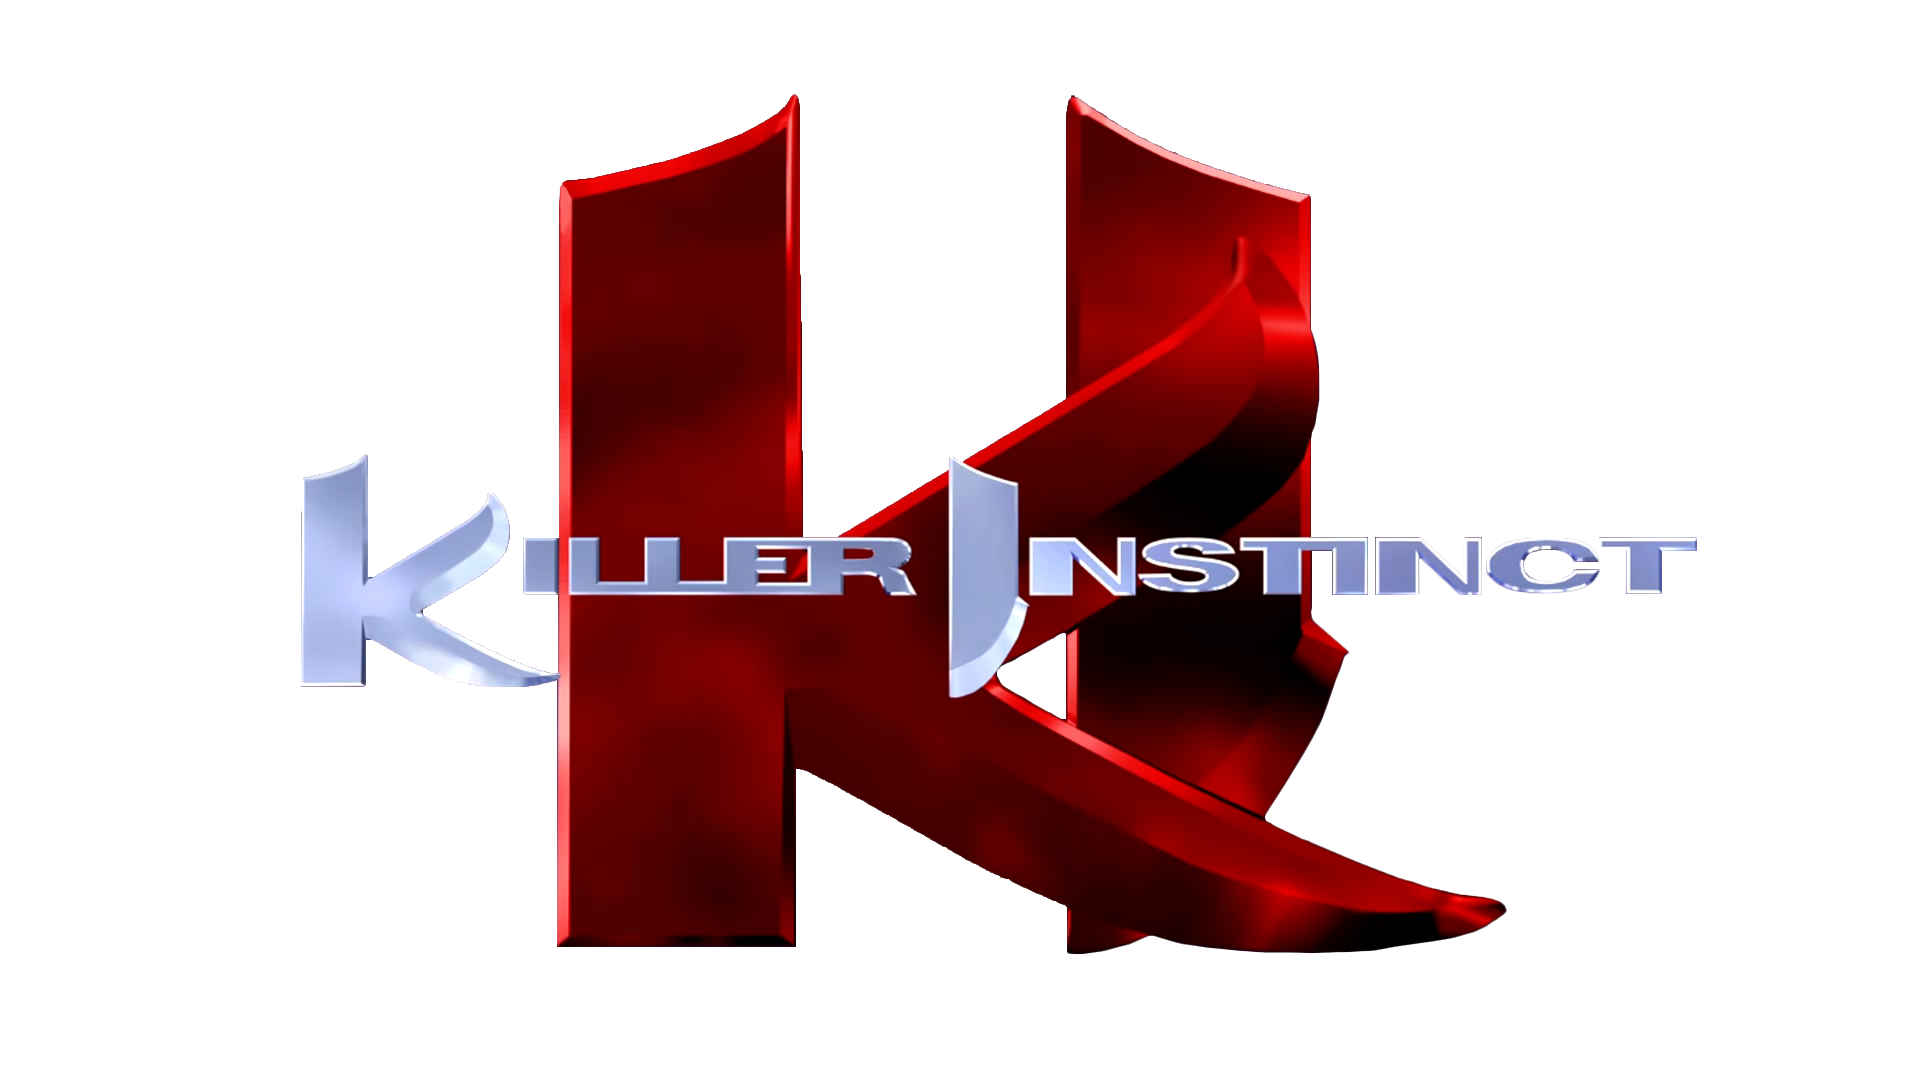 killer instinct 2 chd file